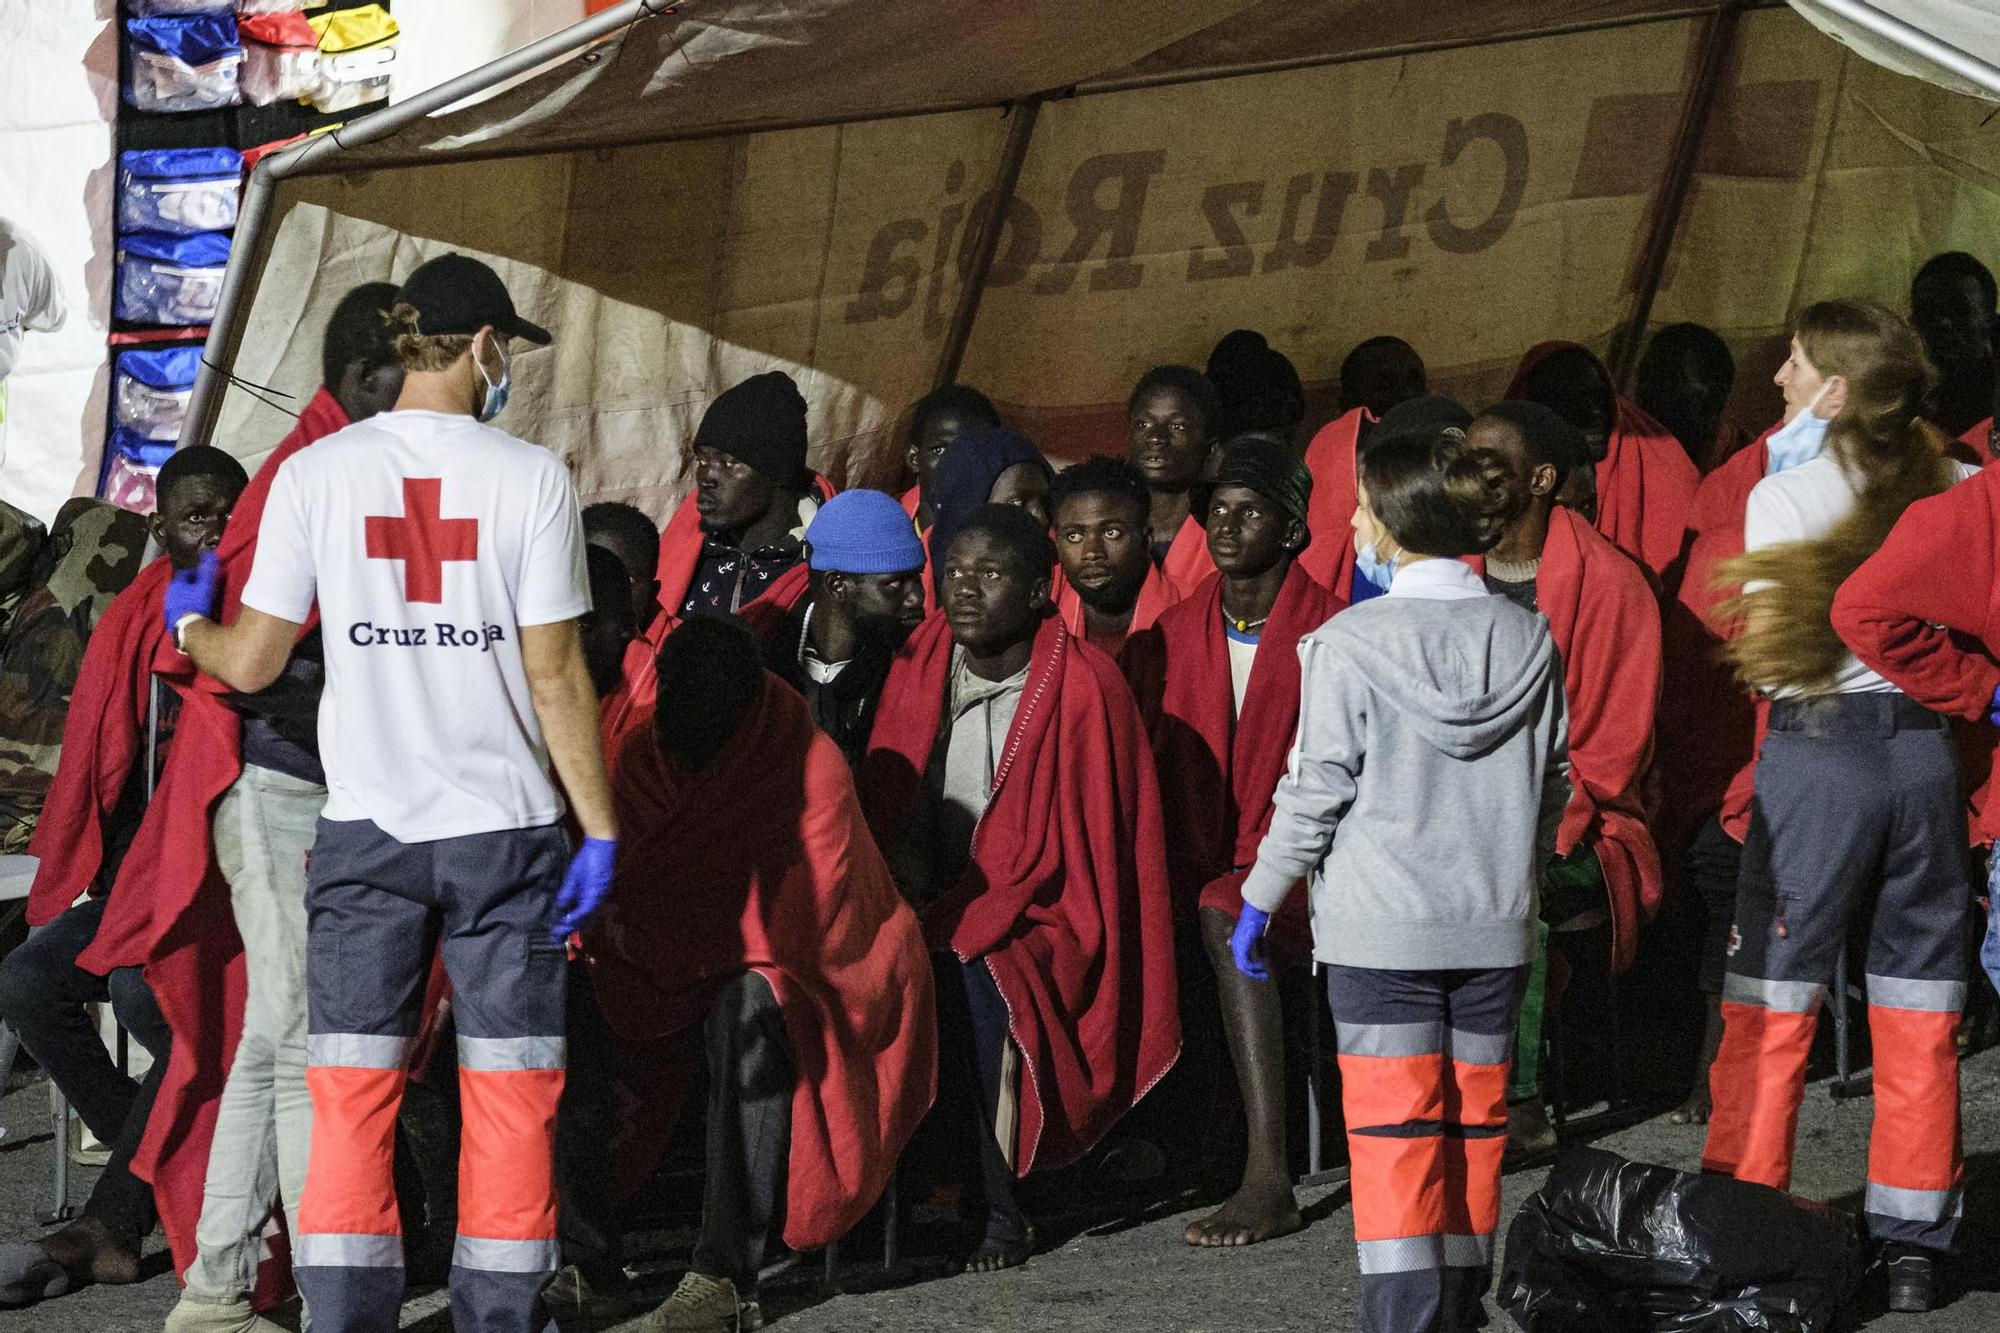 Salvamento Marítimo rescata una patera con unos 80 migrantes al norte de Gran Canaria